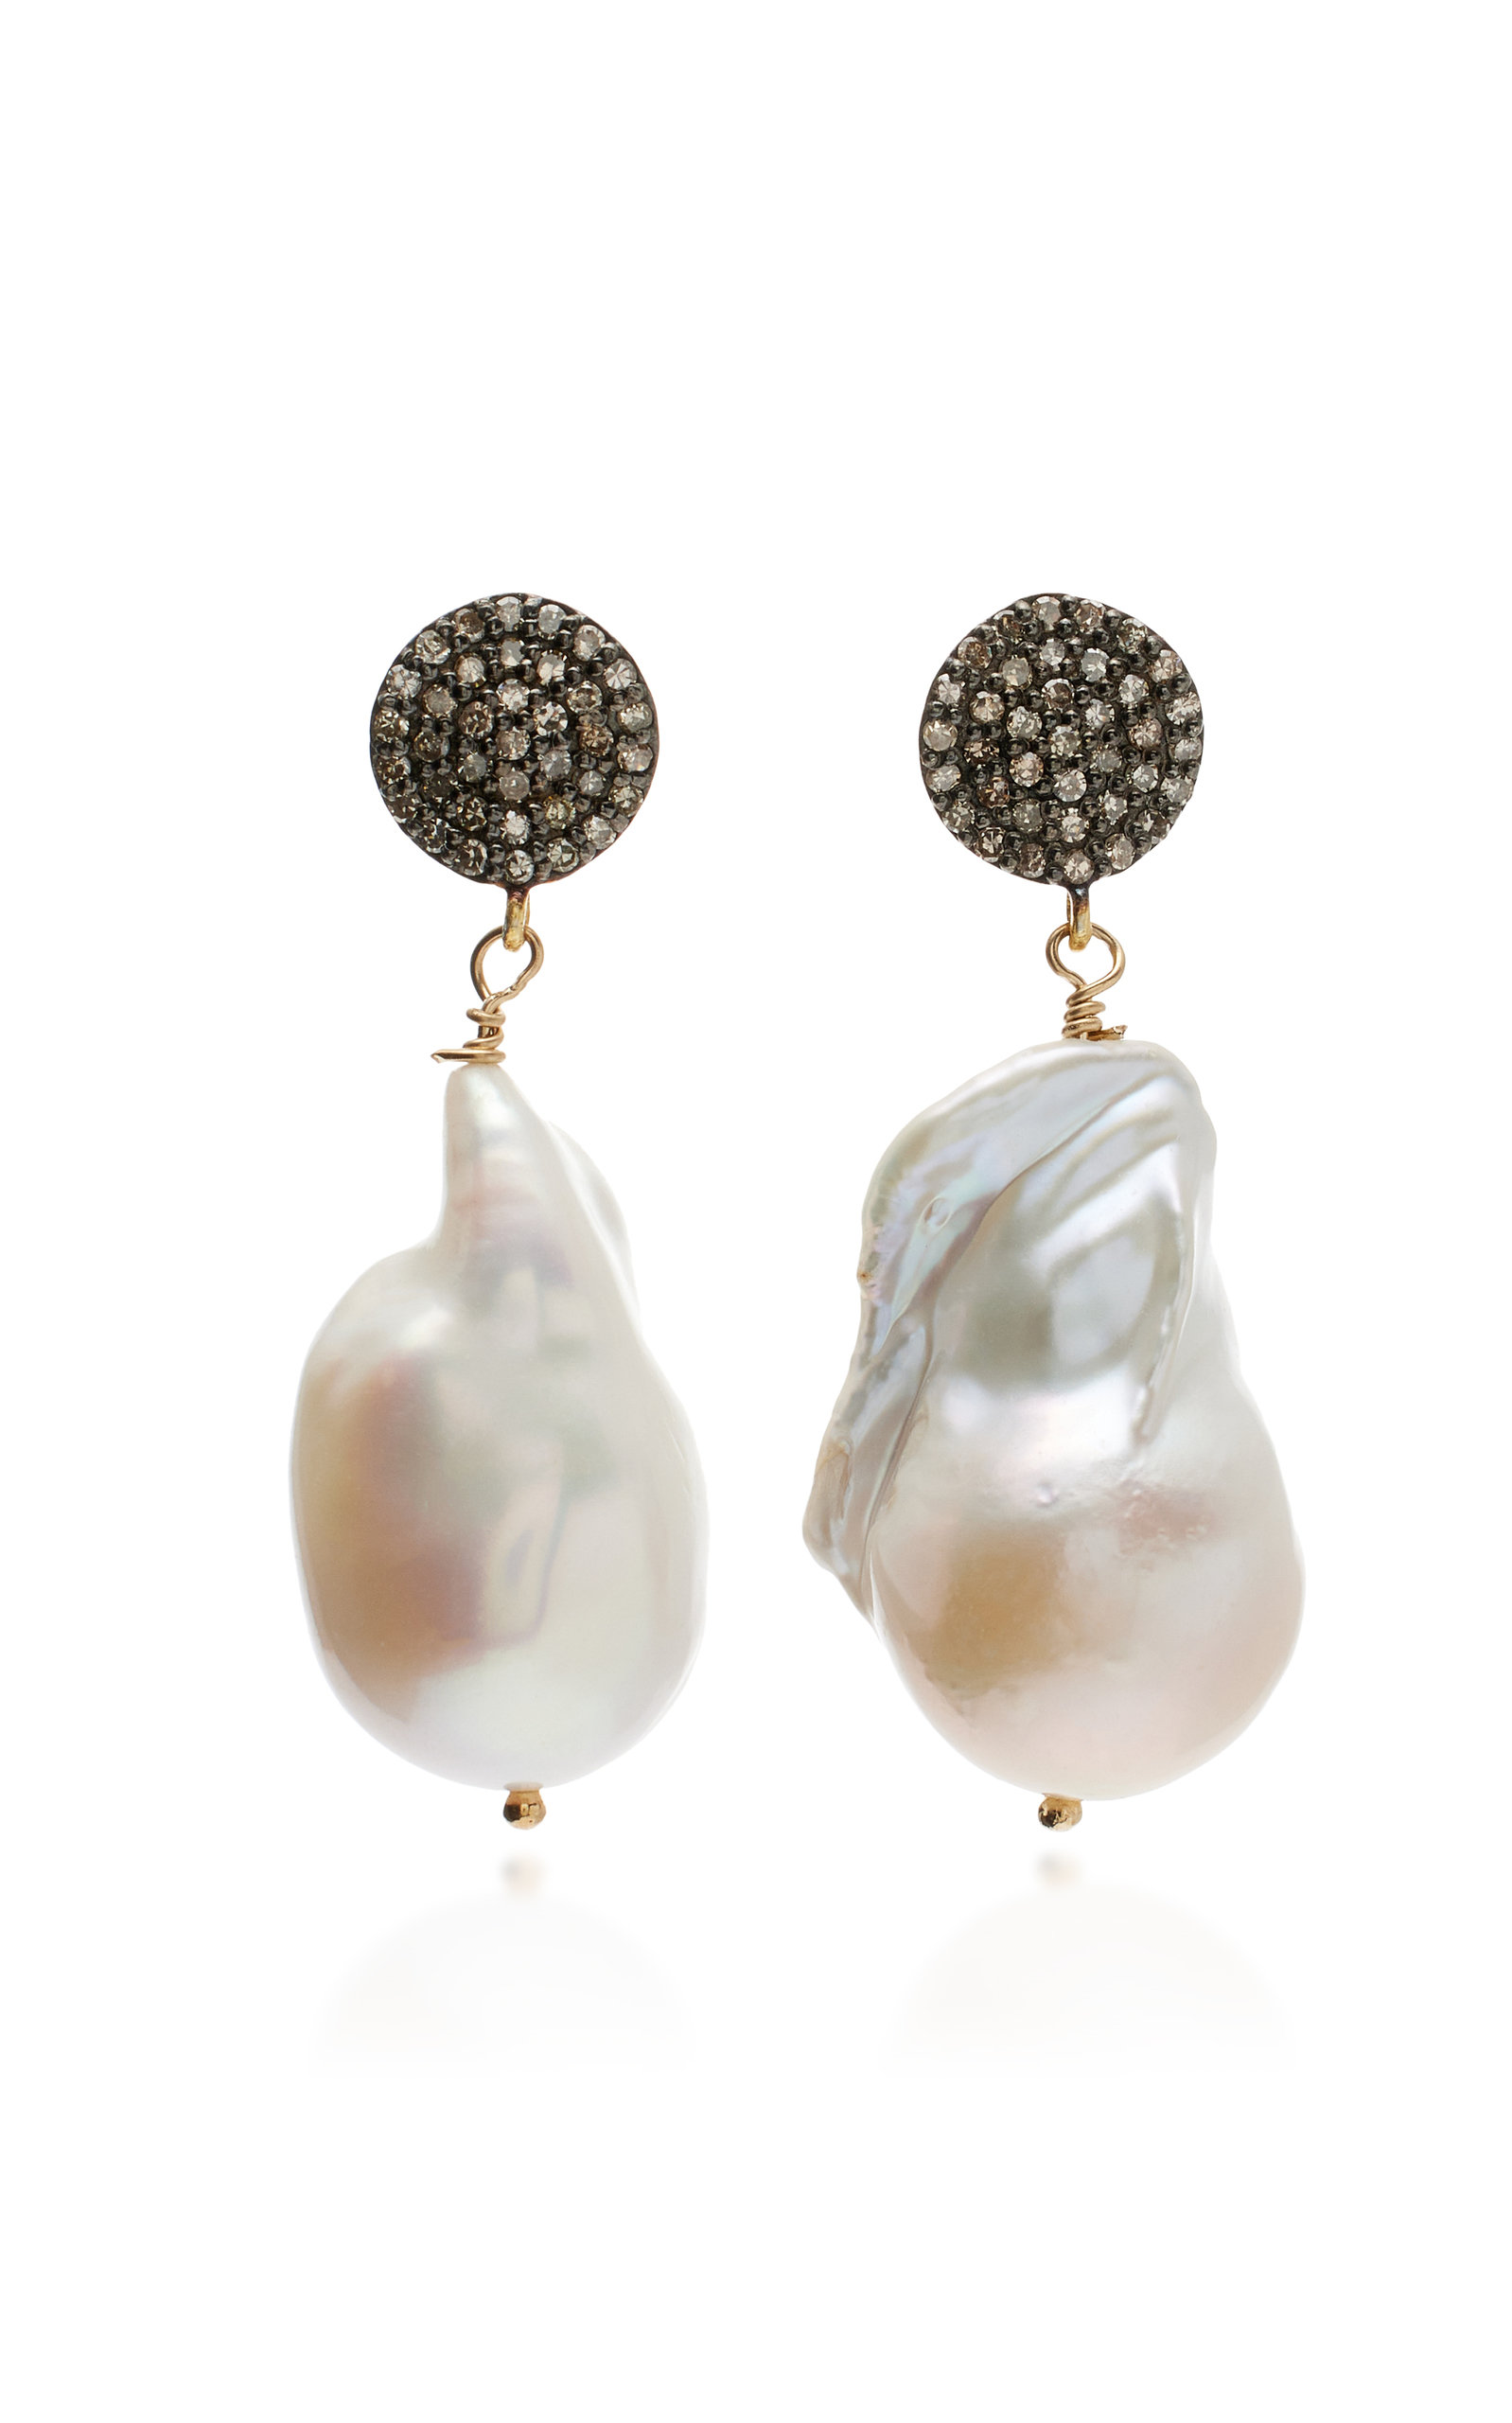 Joie DiGiovanni Women's 18K Yellow Gold Diamond; Pearl Earrings